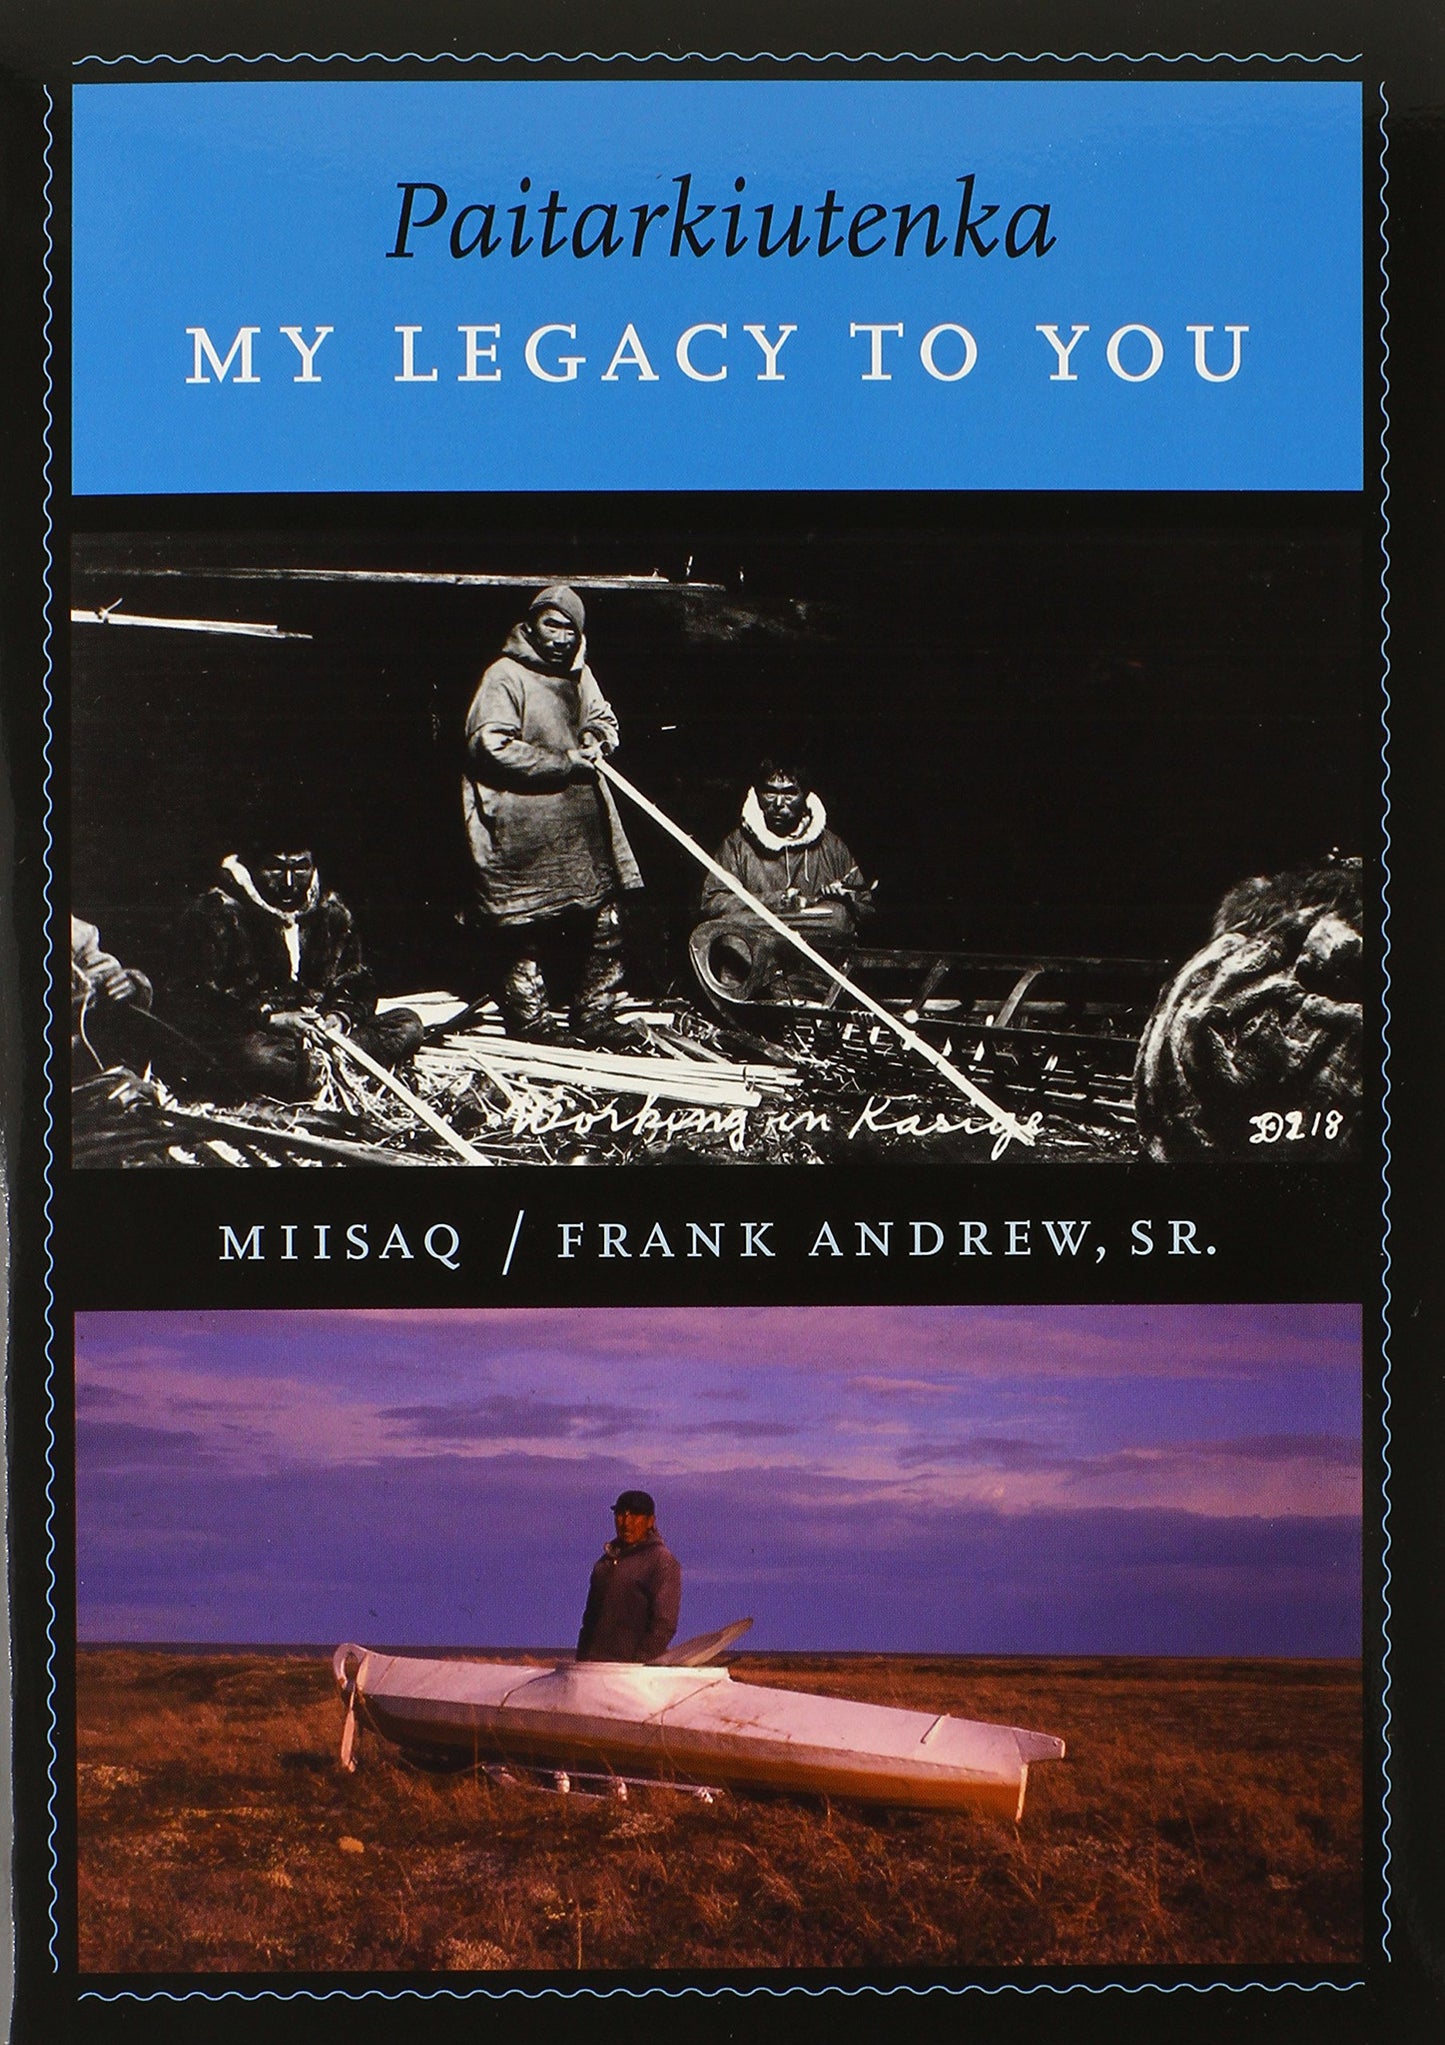 Paitarkiutenka: My Legacy to You by Frank Andrew Sr.